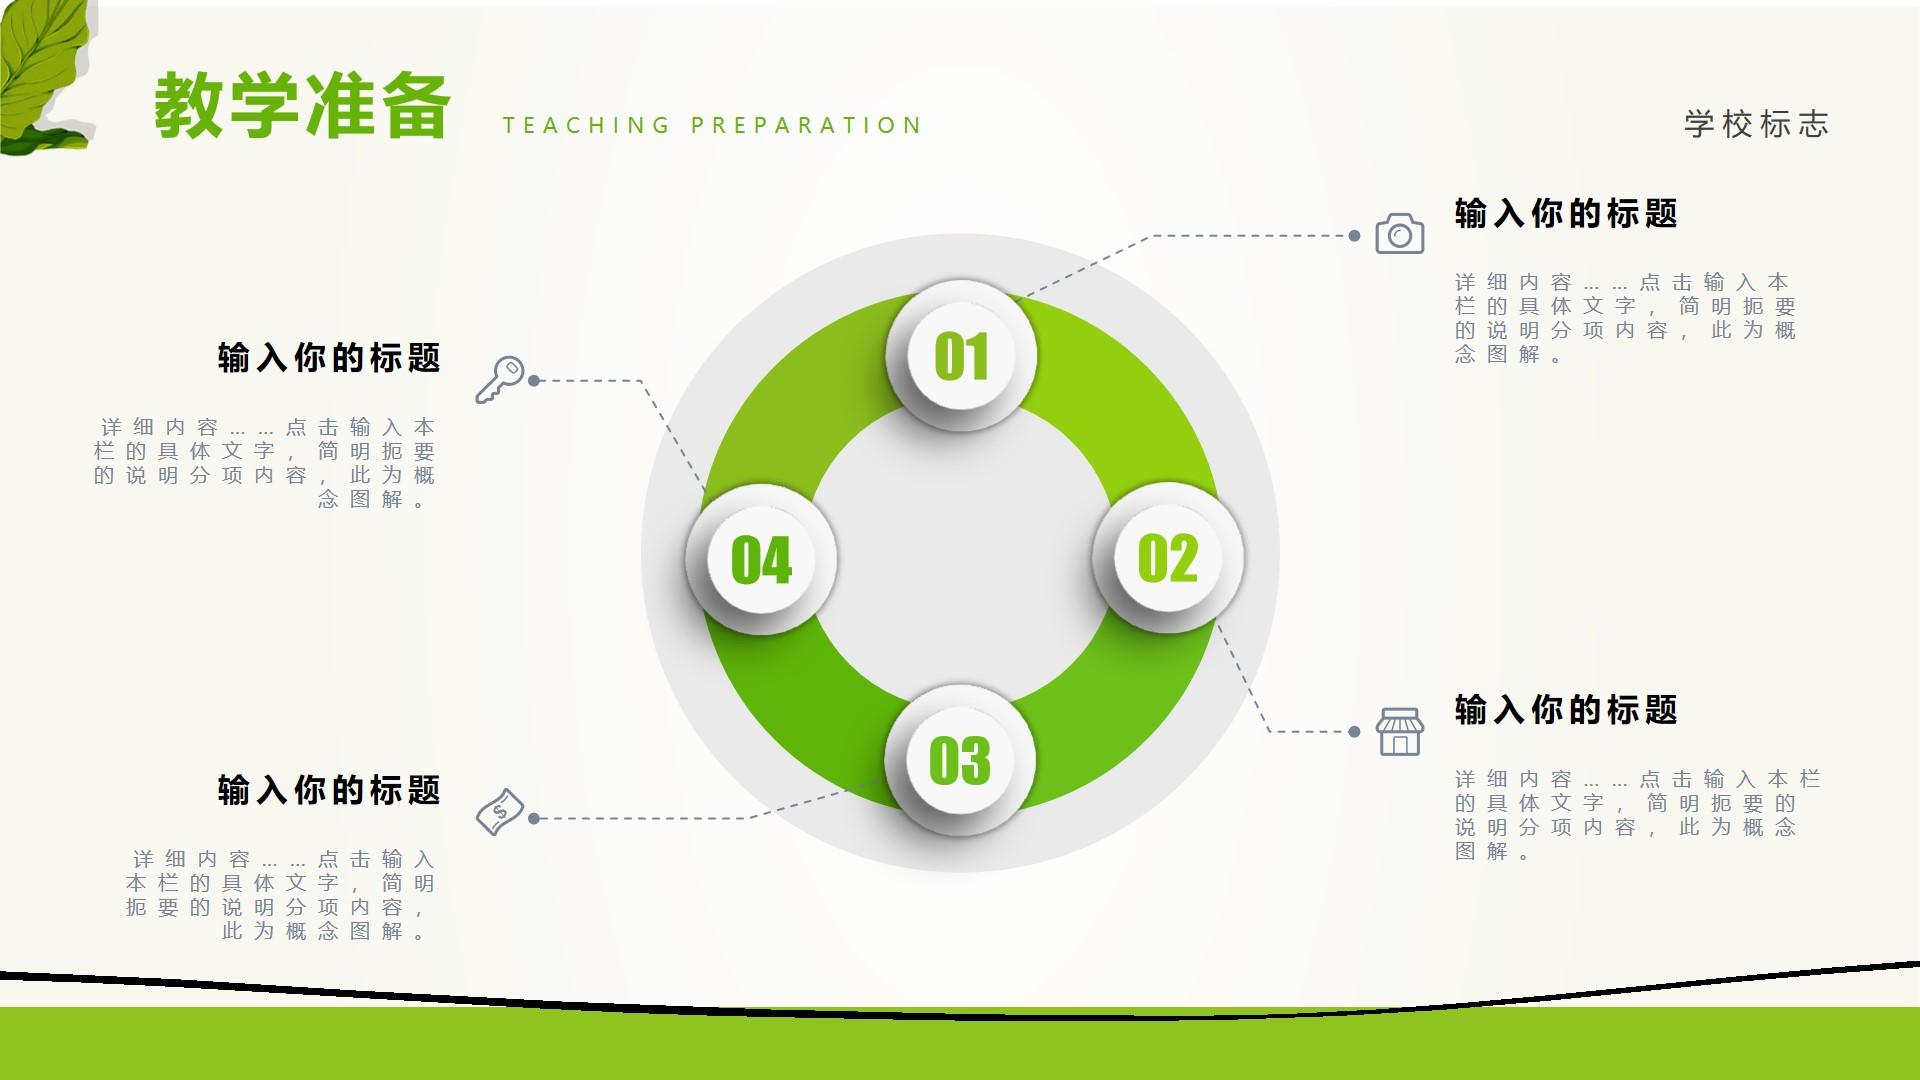 教育教学绿色黑色白色简洁突出概念 teaching preparation 图解云素材PPT模板1672662565653